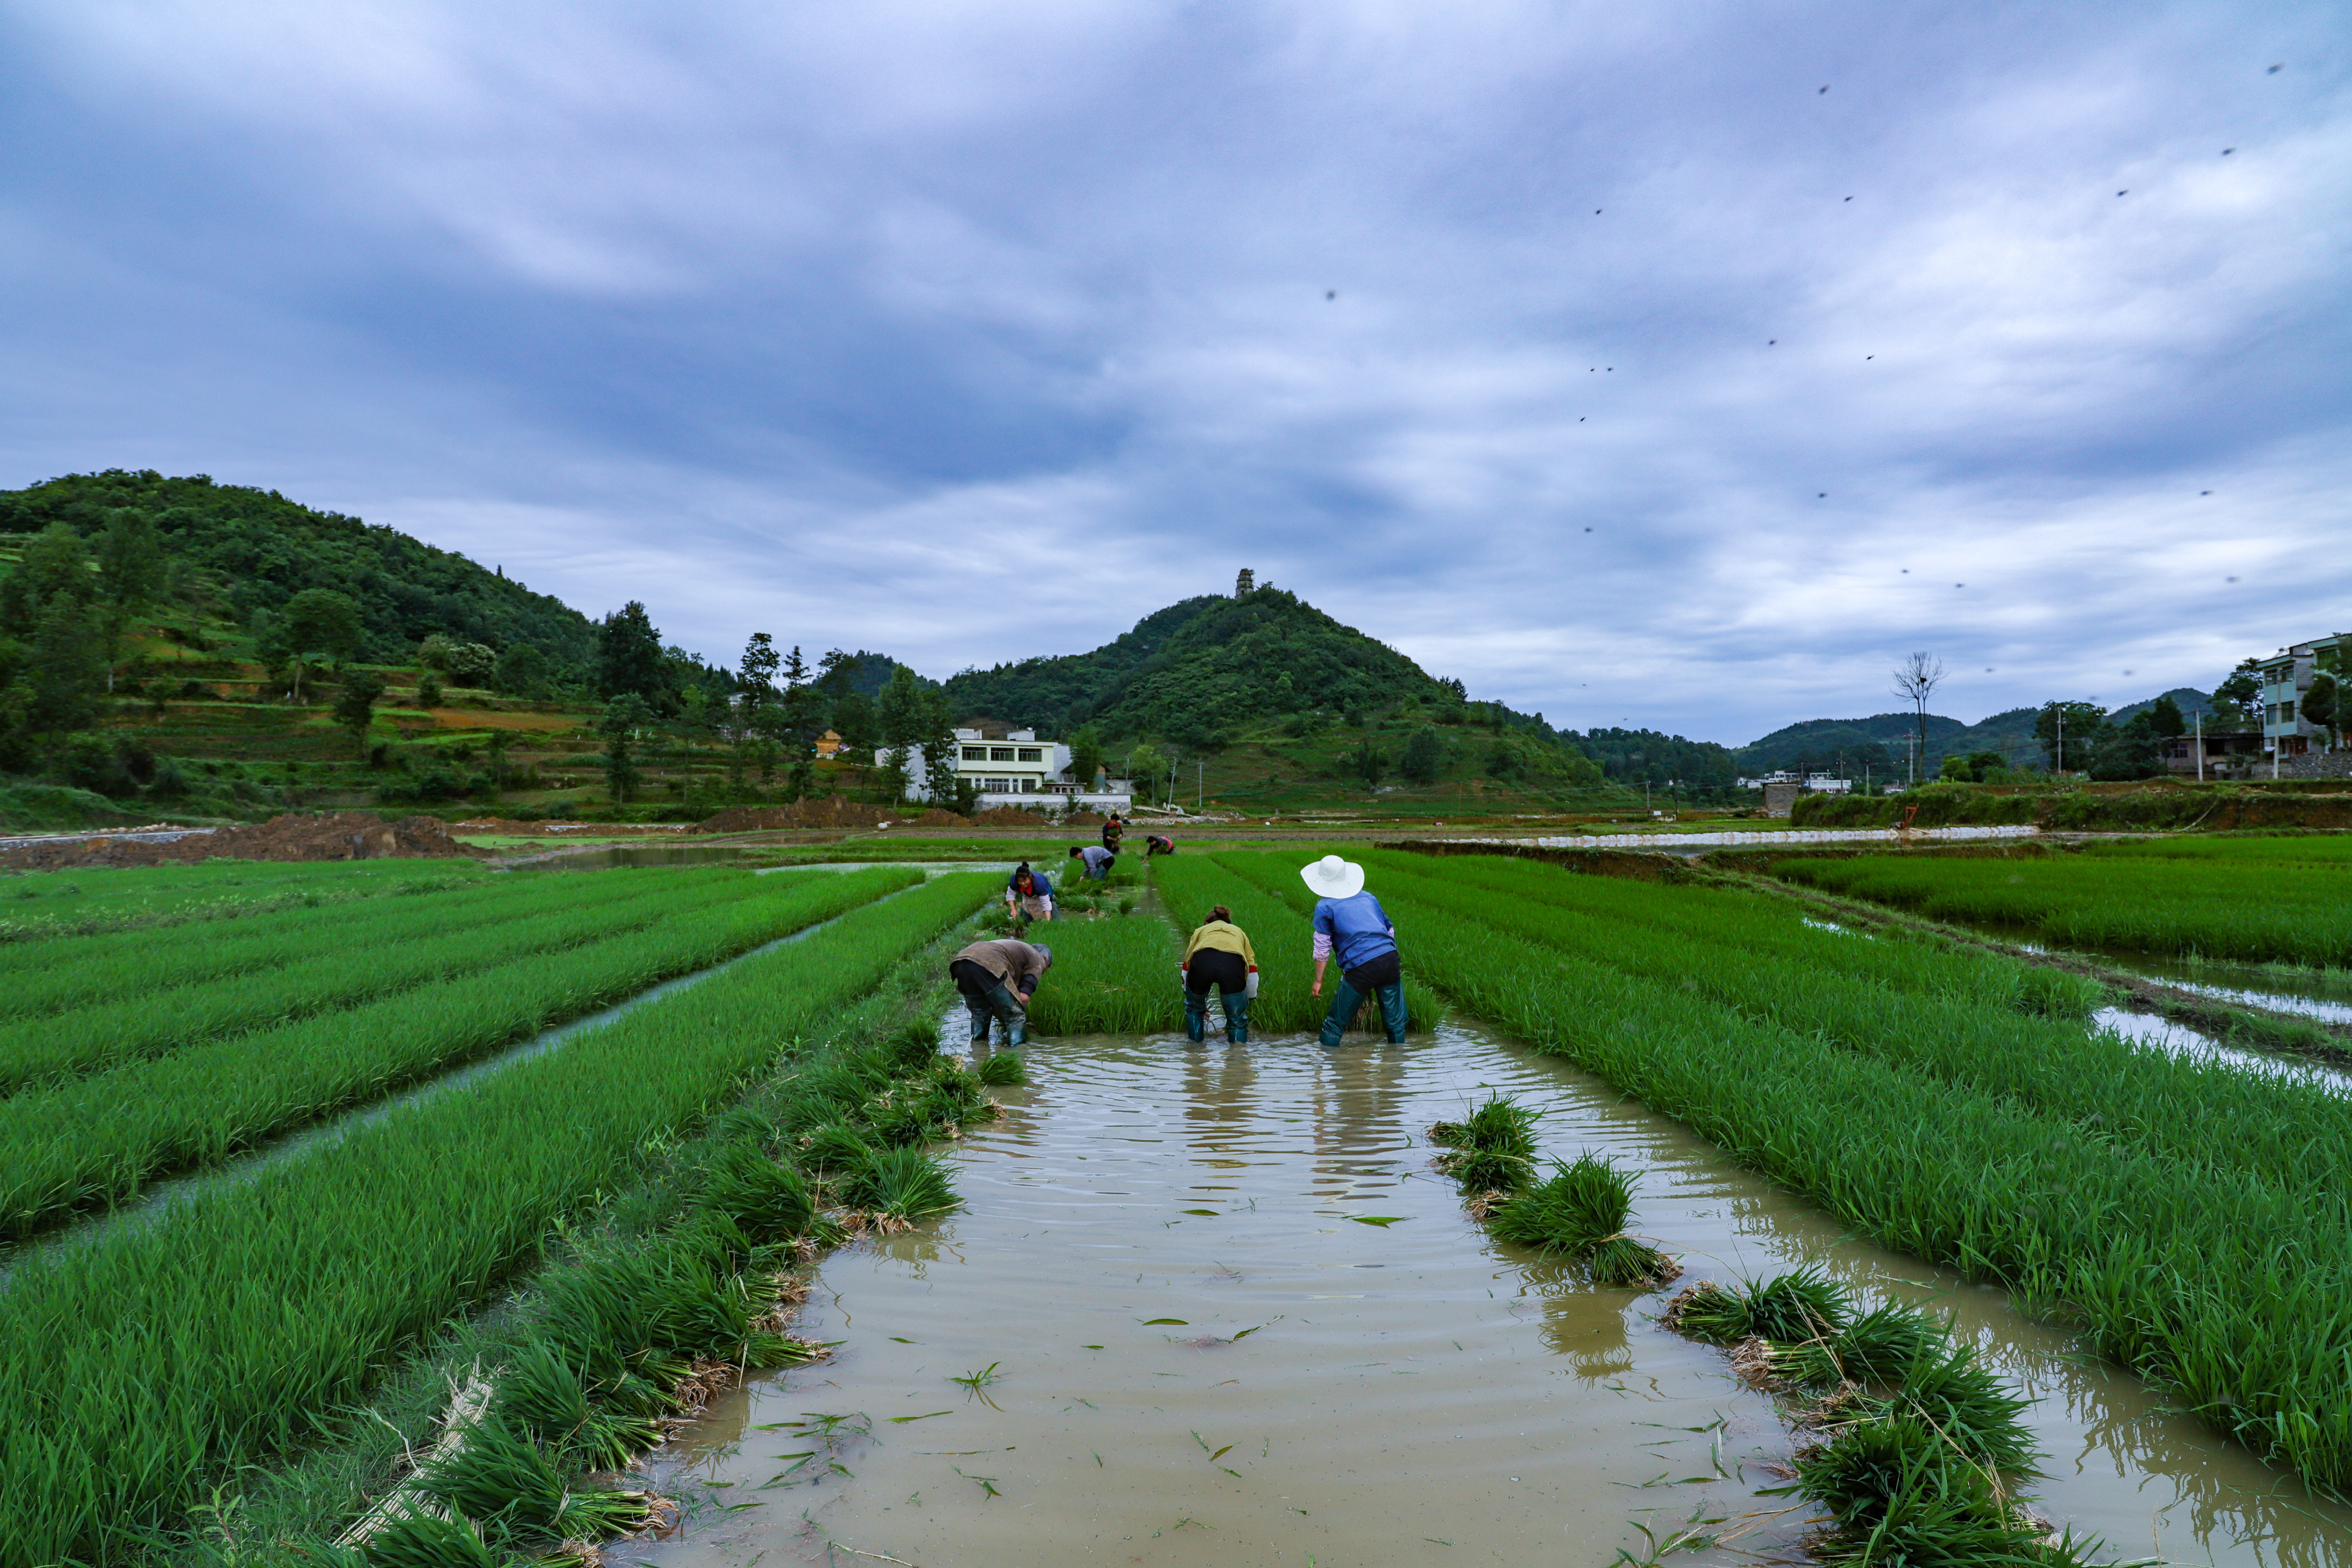 预计种植水稻面积12万亩,全部采用科学化标准化的育秧,插秧技术,为